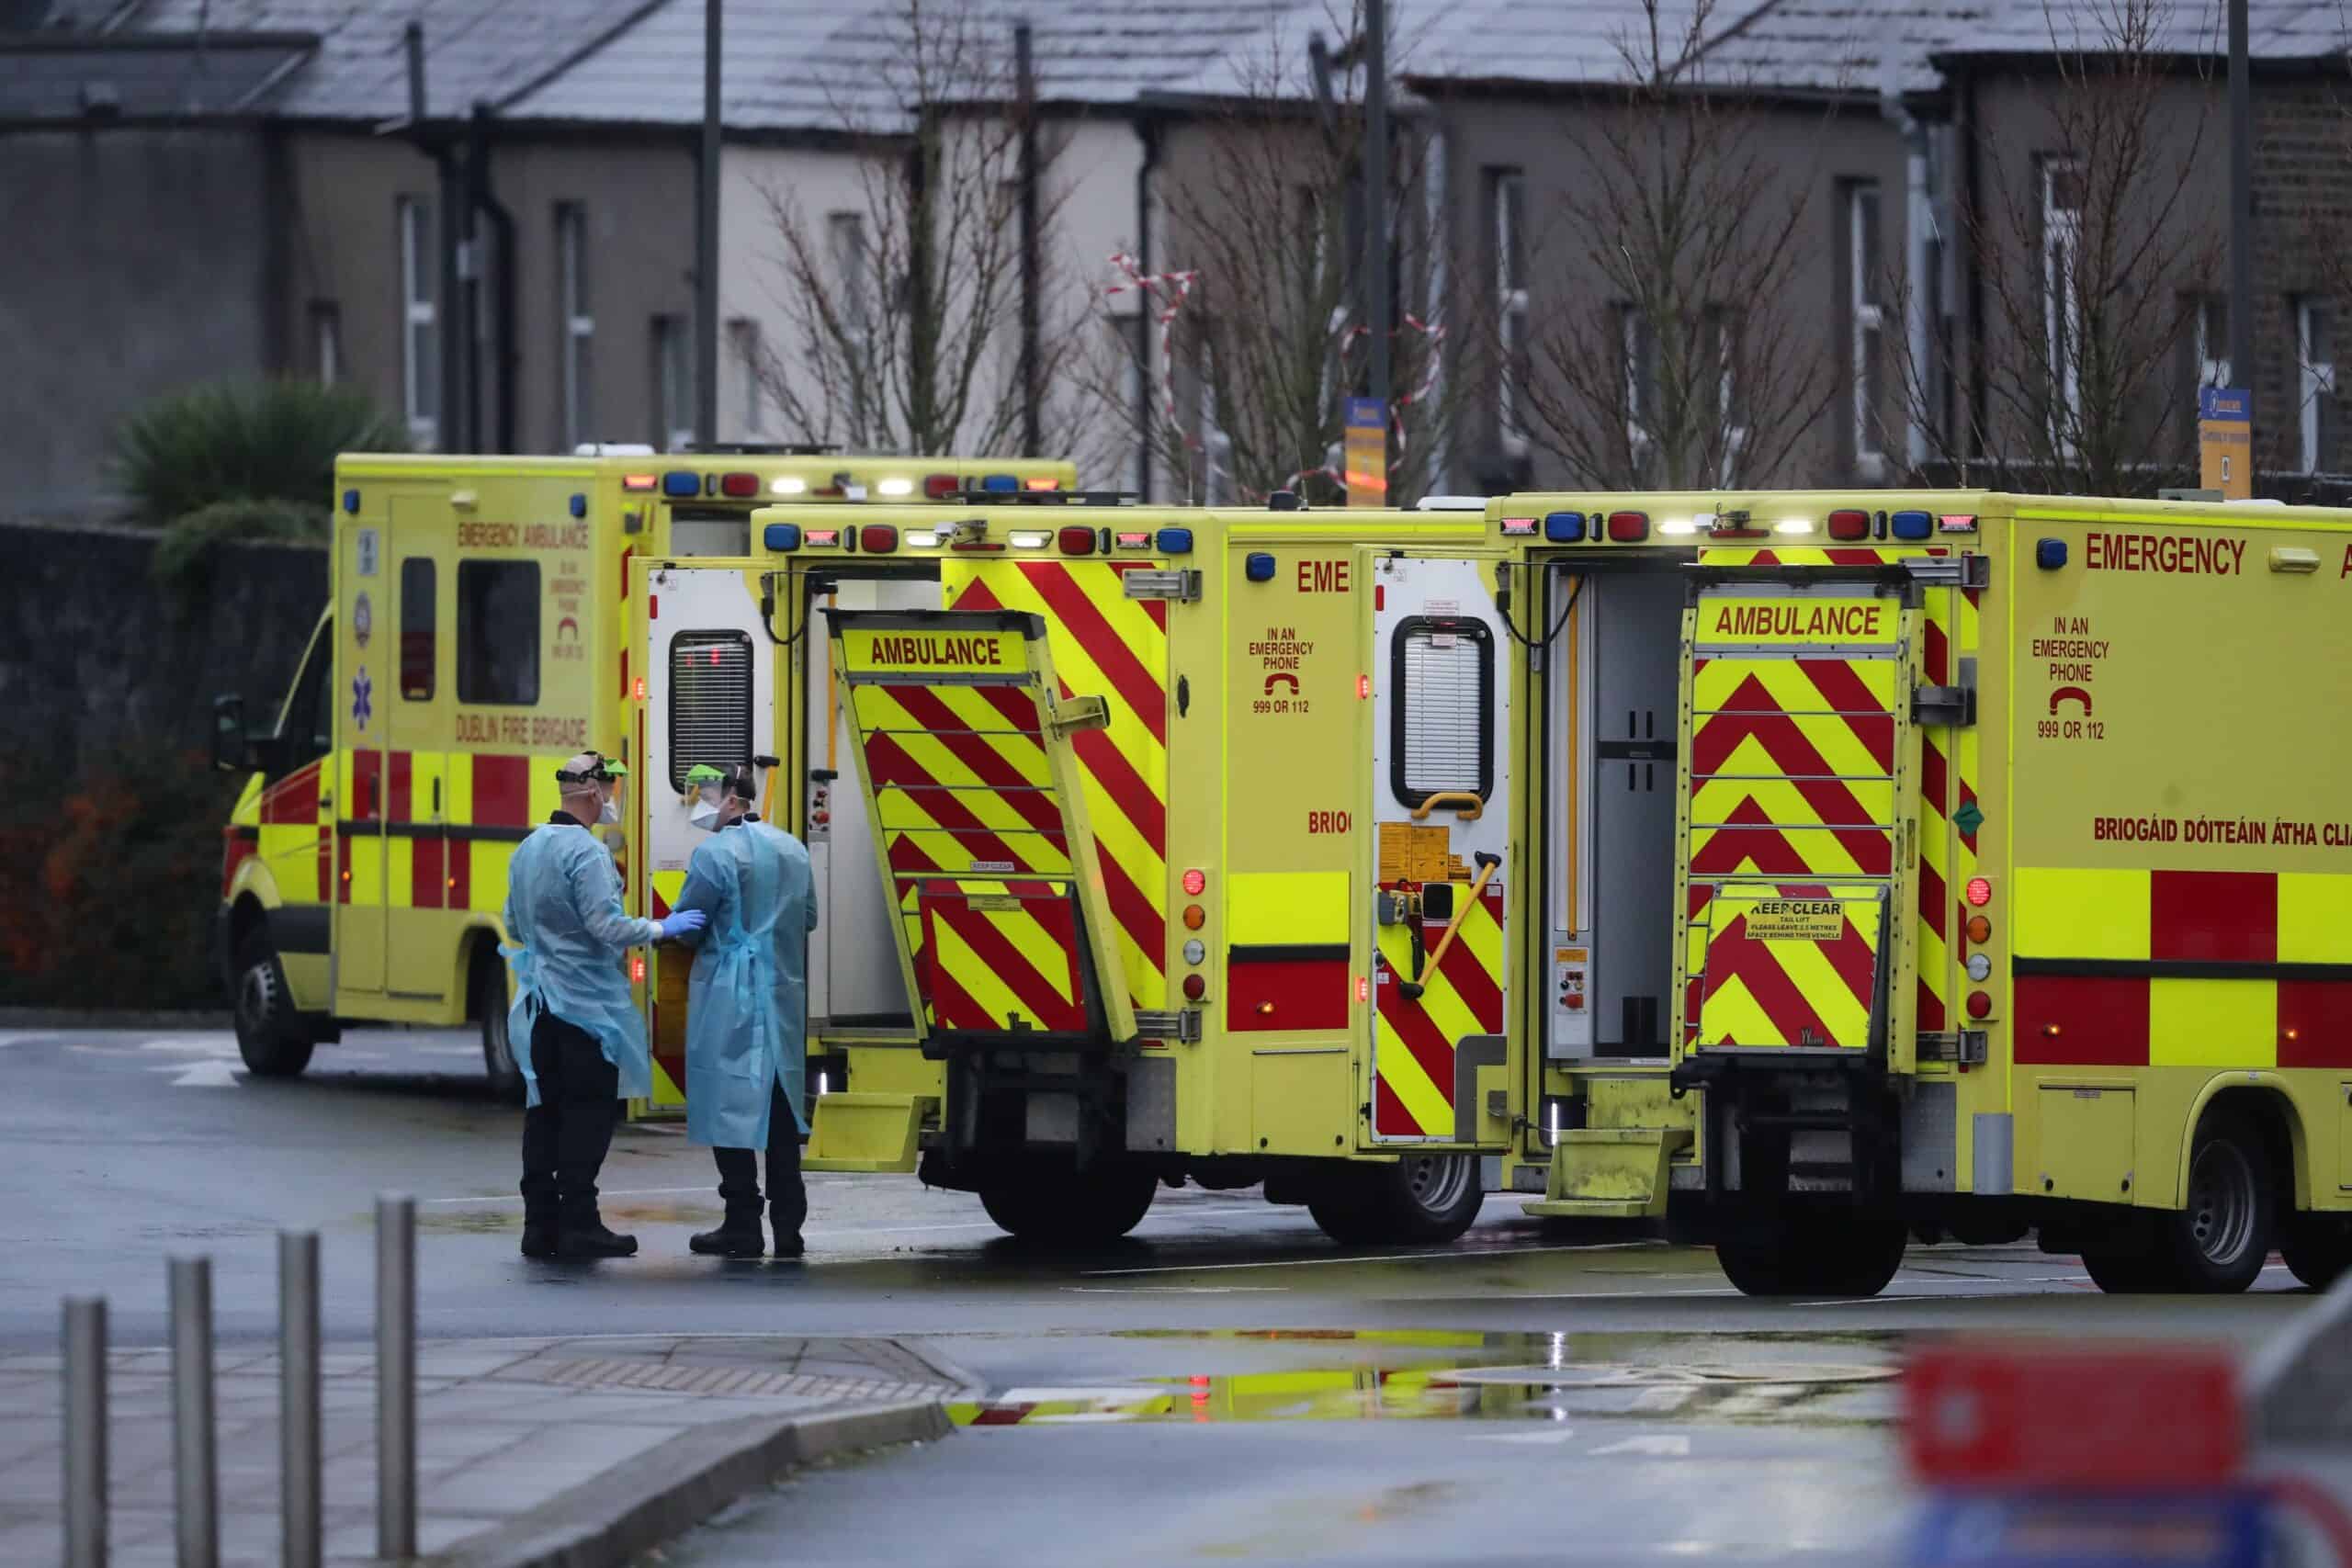 Paramedics describe devastating consequences of Tory cuts